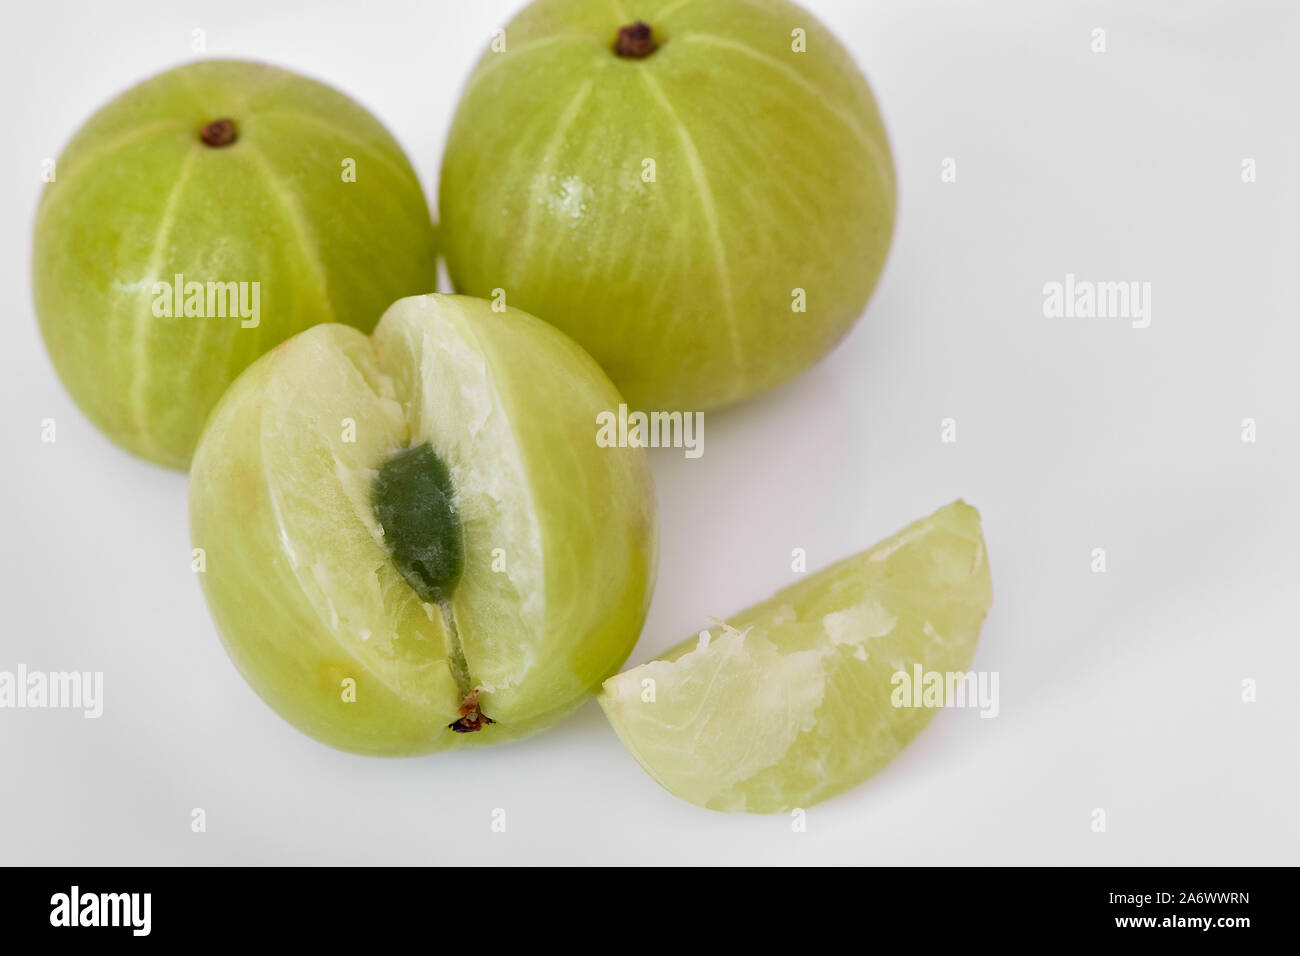 Whole and sliced gooseberries or Amala (Phyllanthus emblicxa) on a  white background Stock Photo